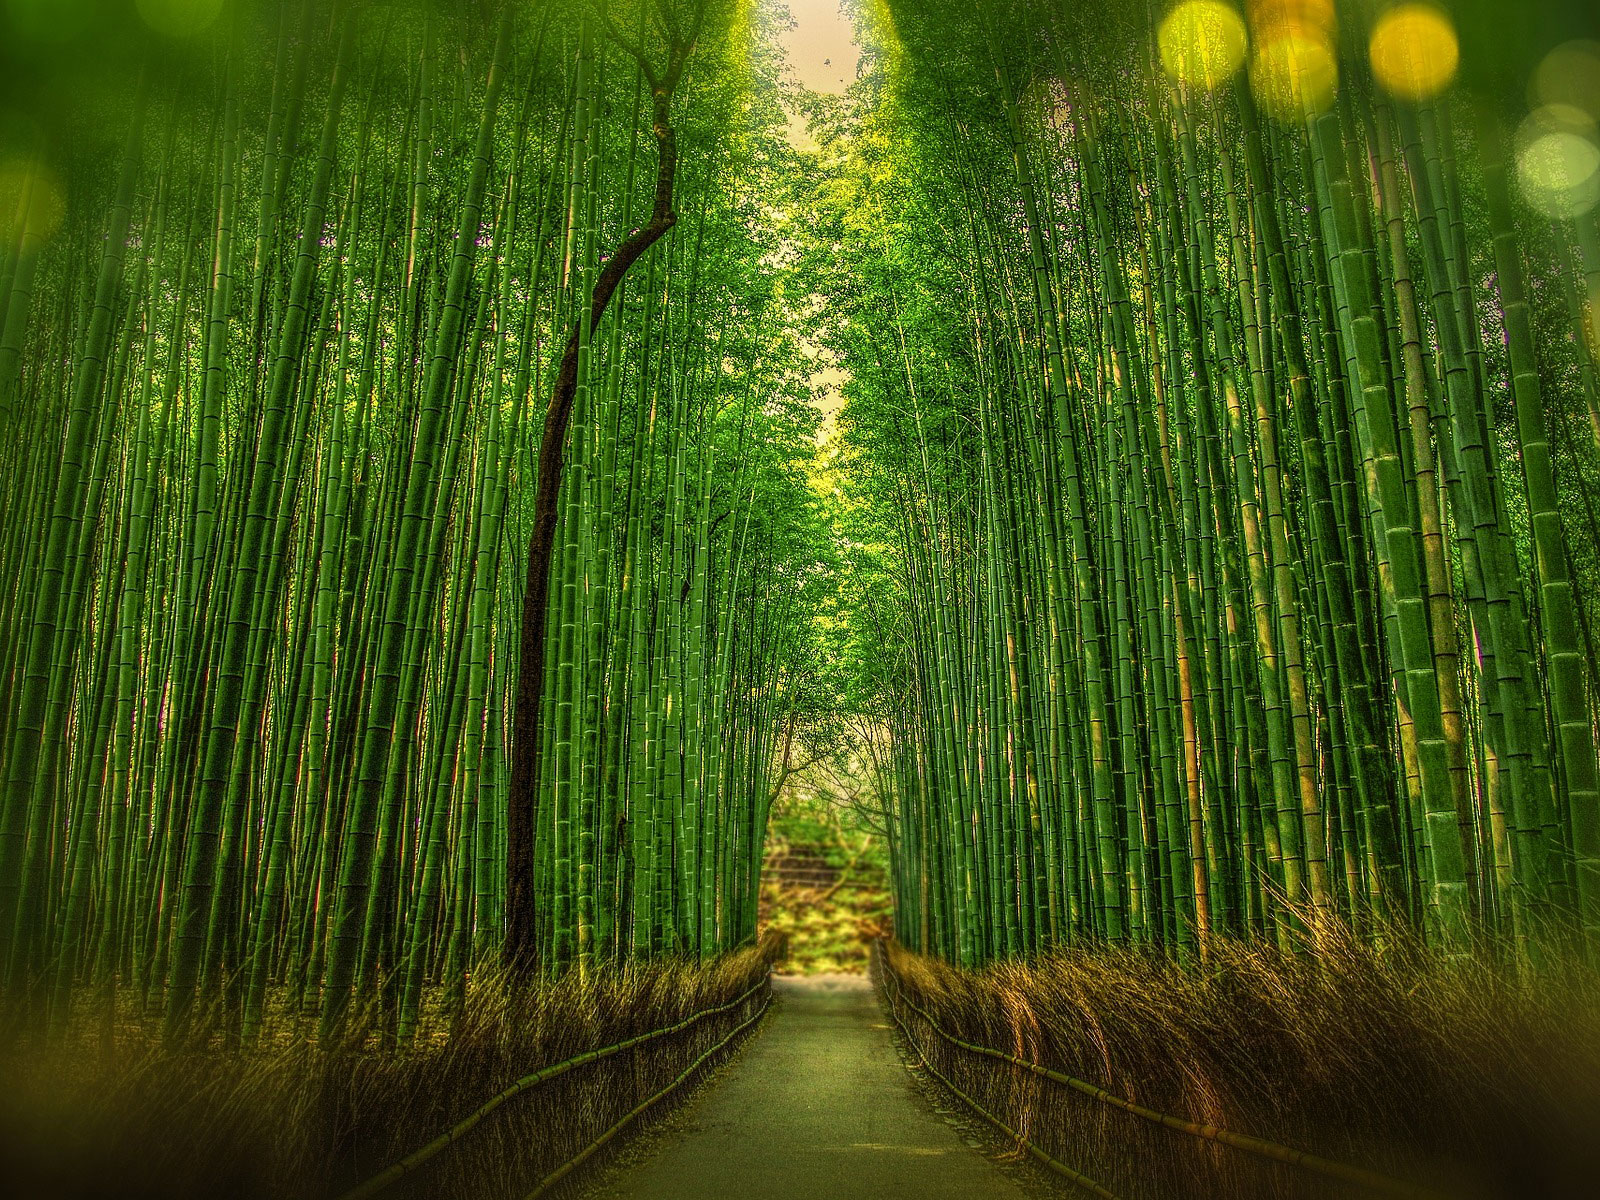 Le bambou est une herbe géante apparue il y a 200 millions d’années